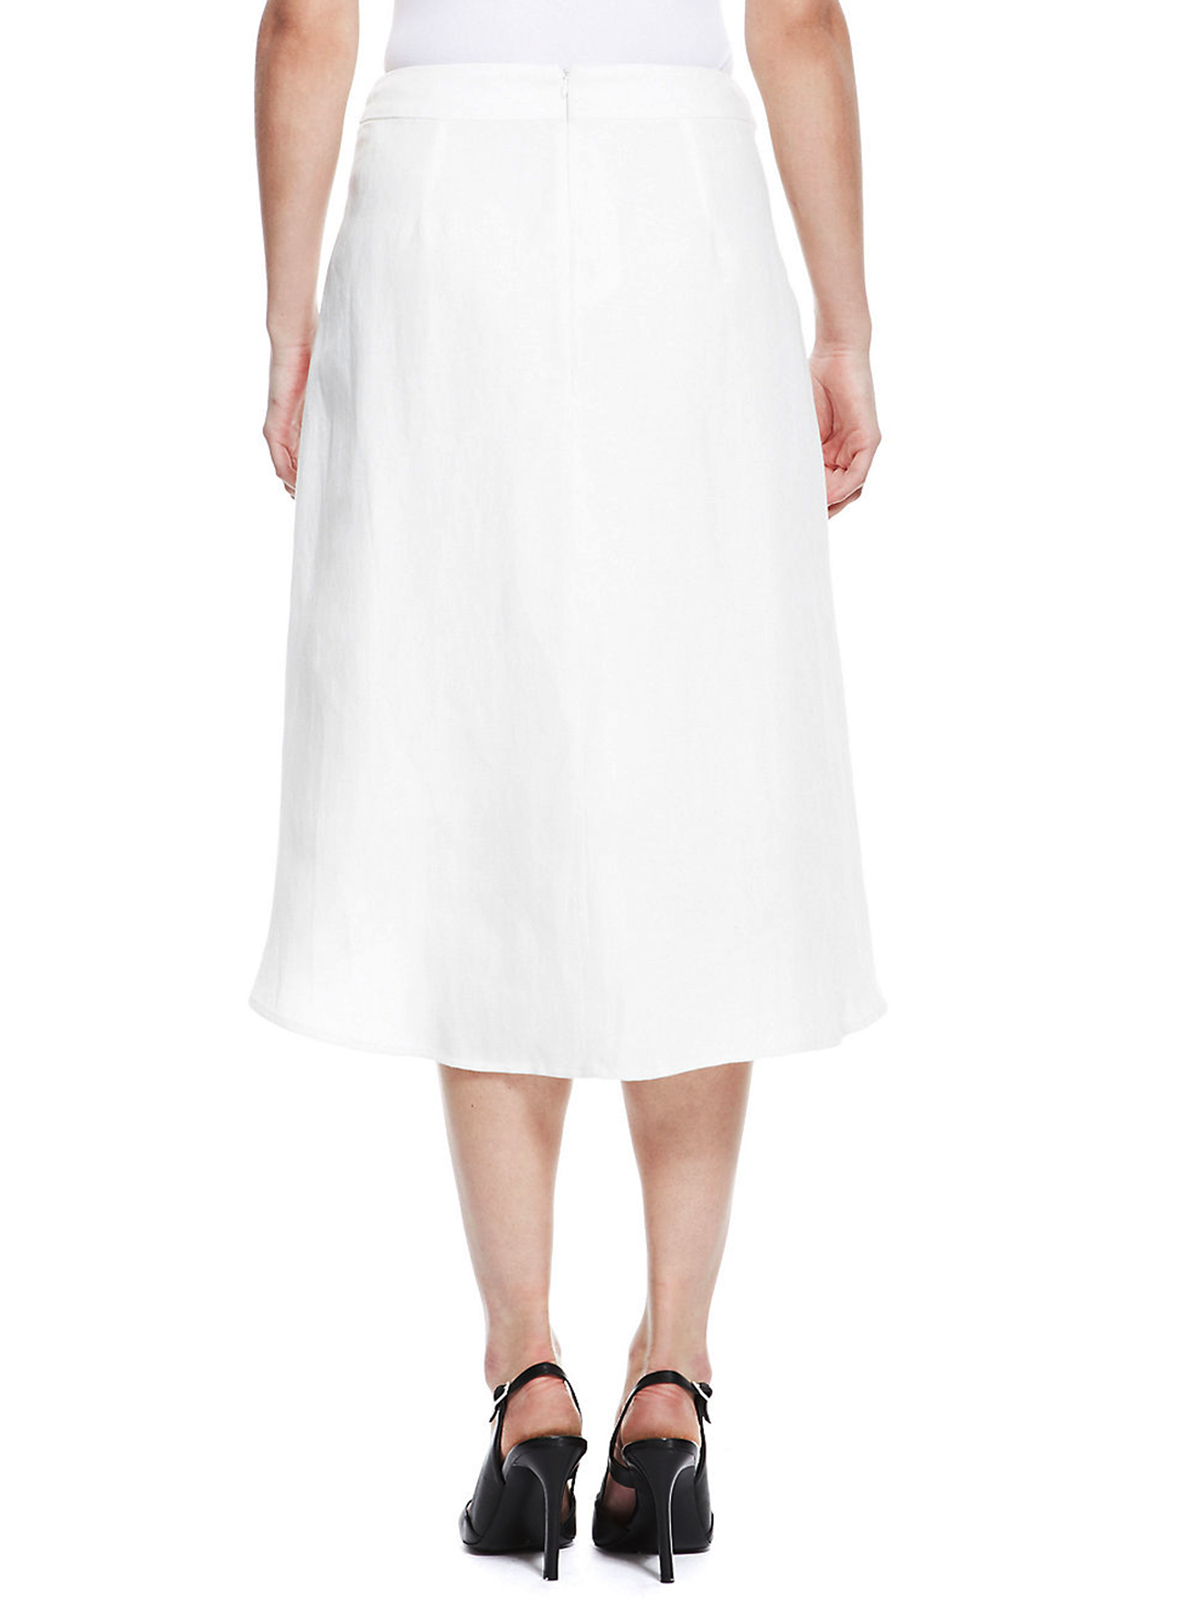 4utograph WHITE Linen Blend Luxury Dippy Hem Long Skirt - Size 14